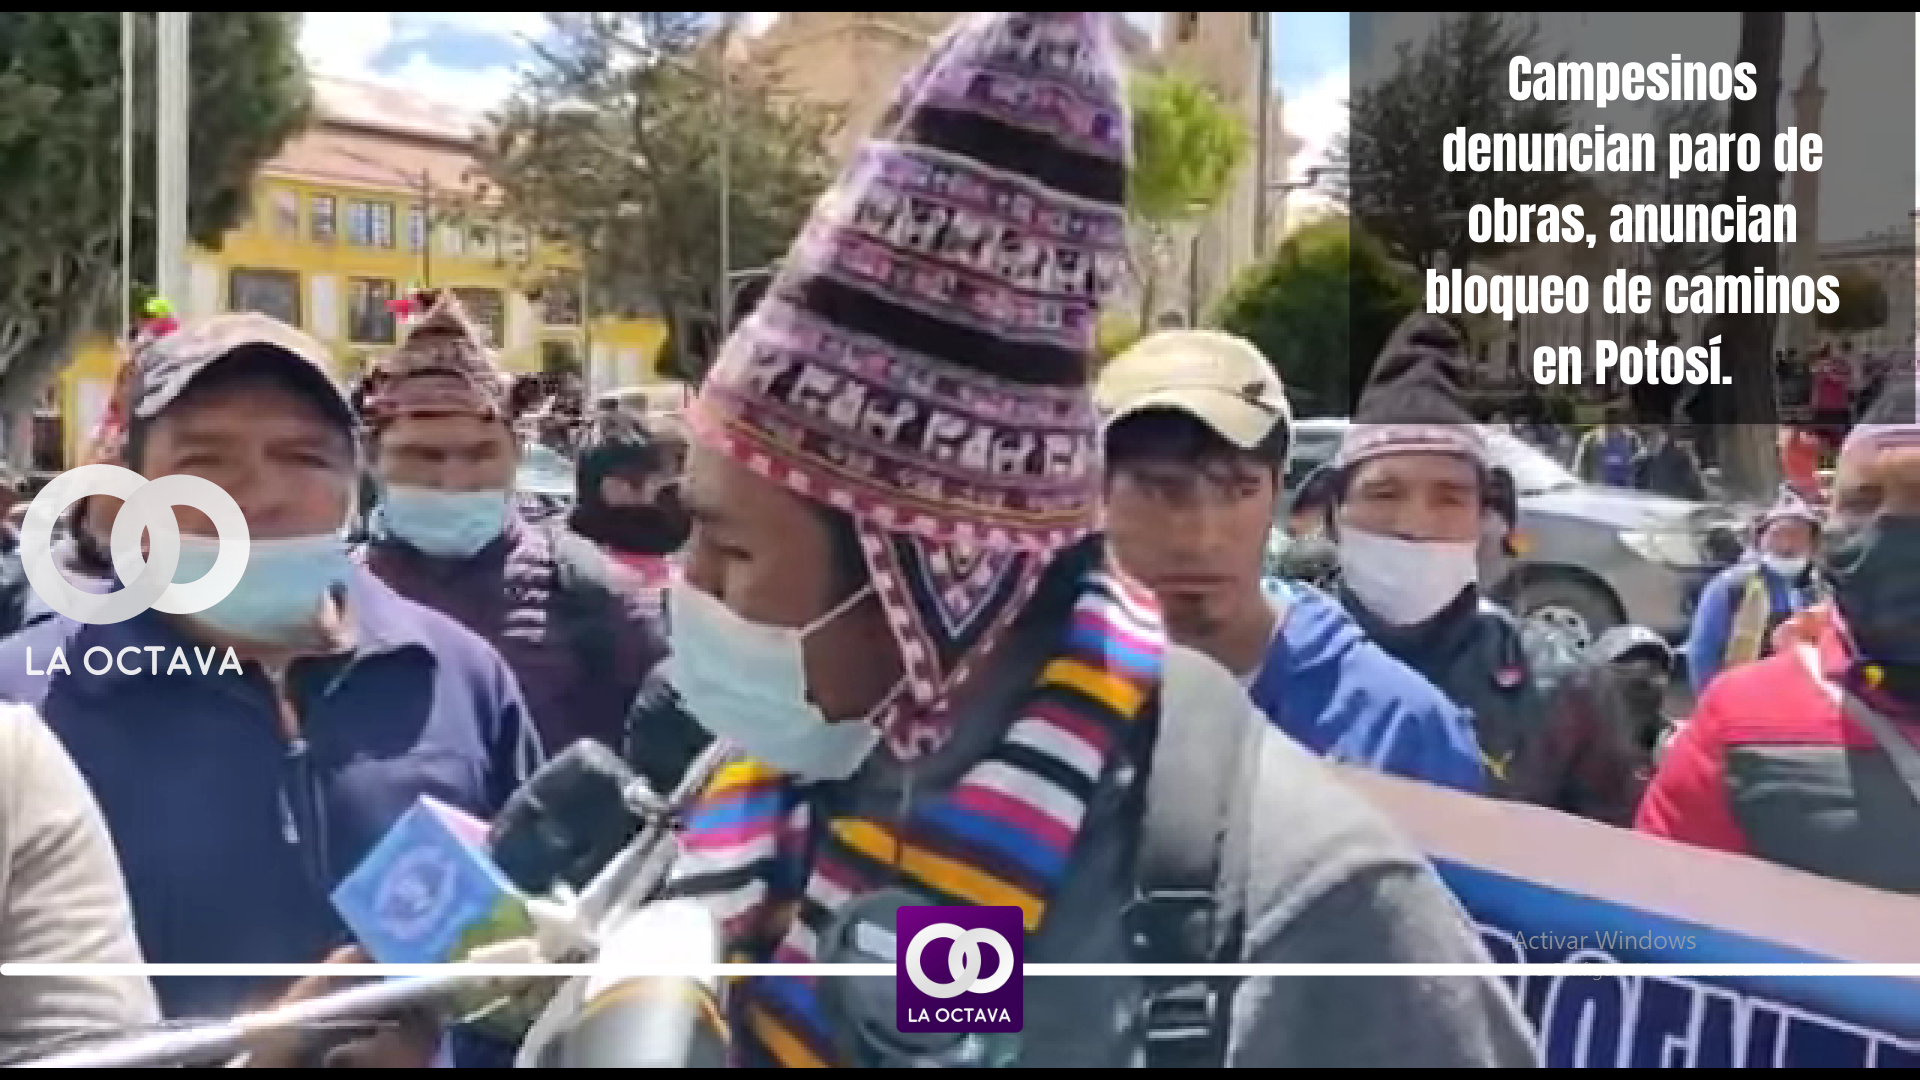 Campesinos denuncian paro de obras, anuncian bloqueo de caminos en Potosí.